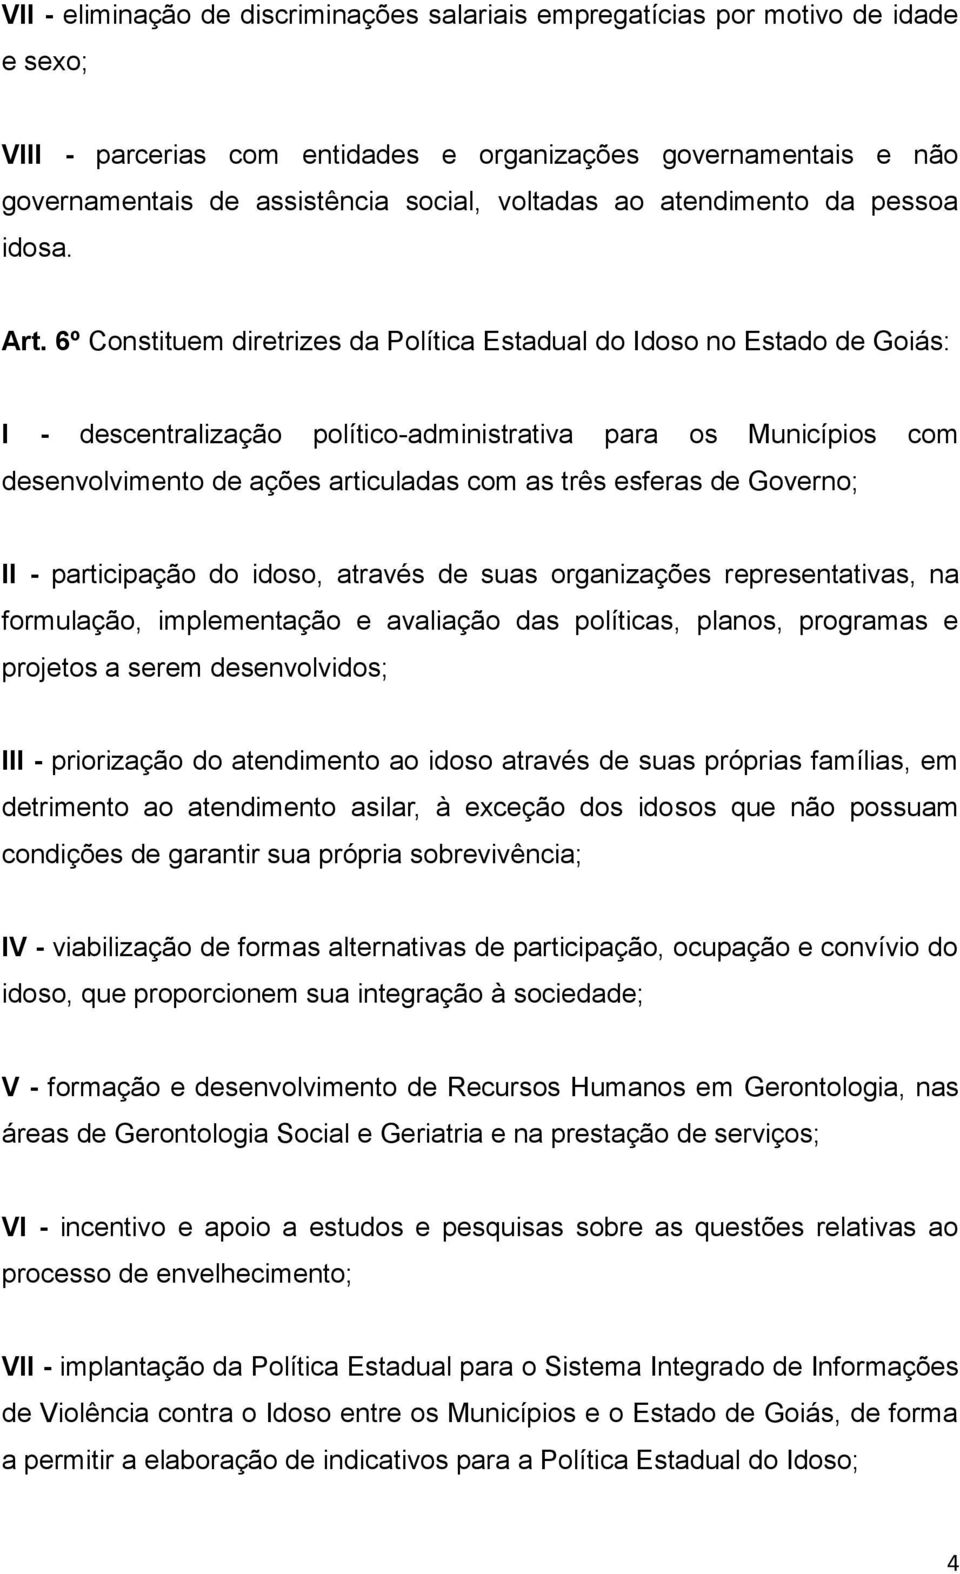 6º Constituem diretrizes da Política Estadual do Idoso no Estado de Goiás: I - descentralização político-administrativa para os Municípios com desenvolvimento de ações articuladas com as três esferas